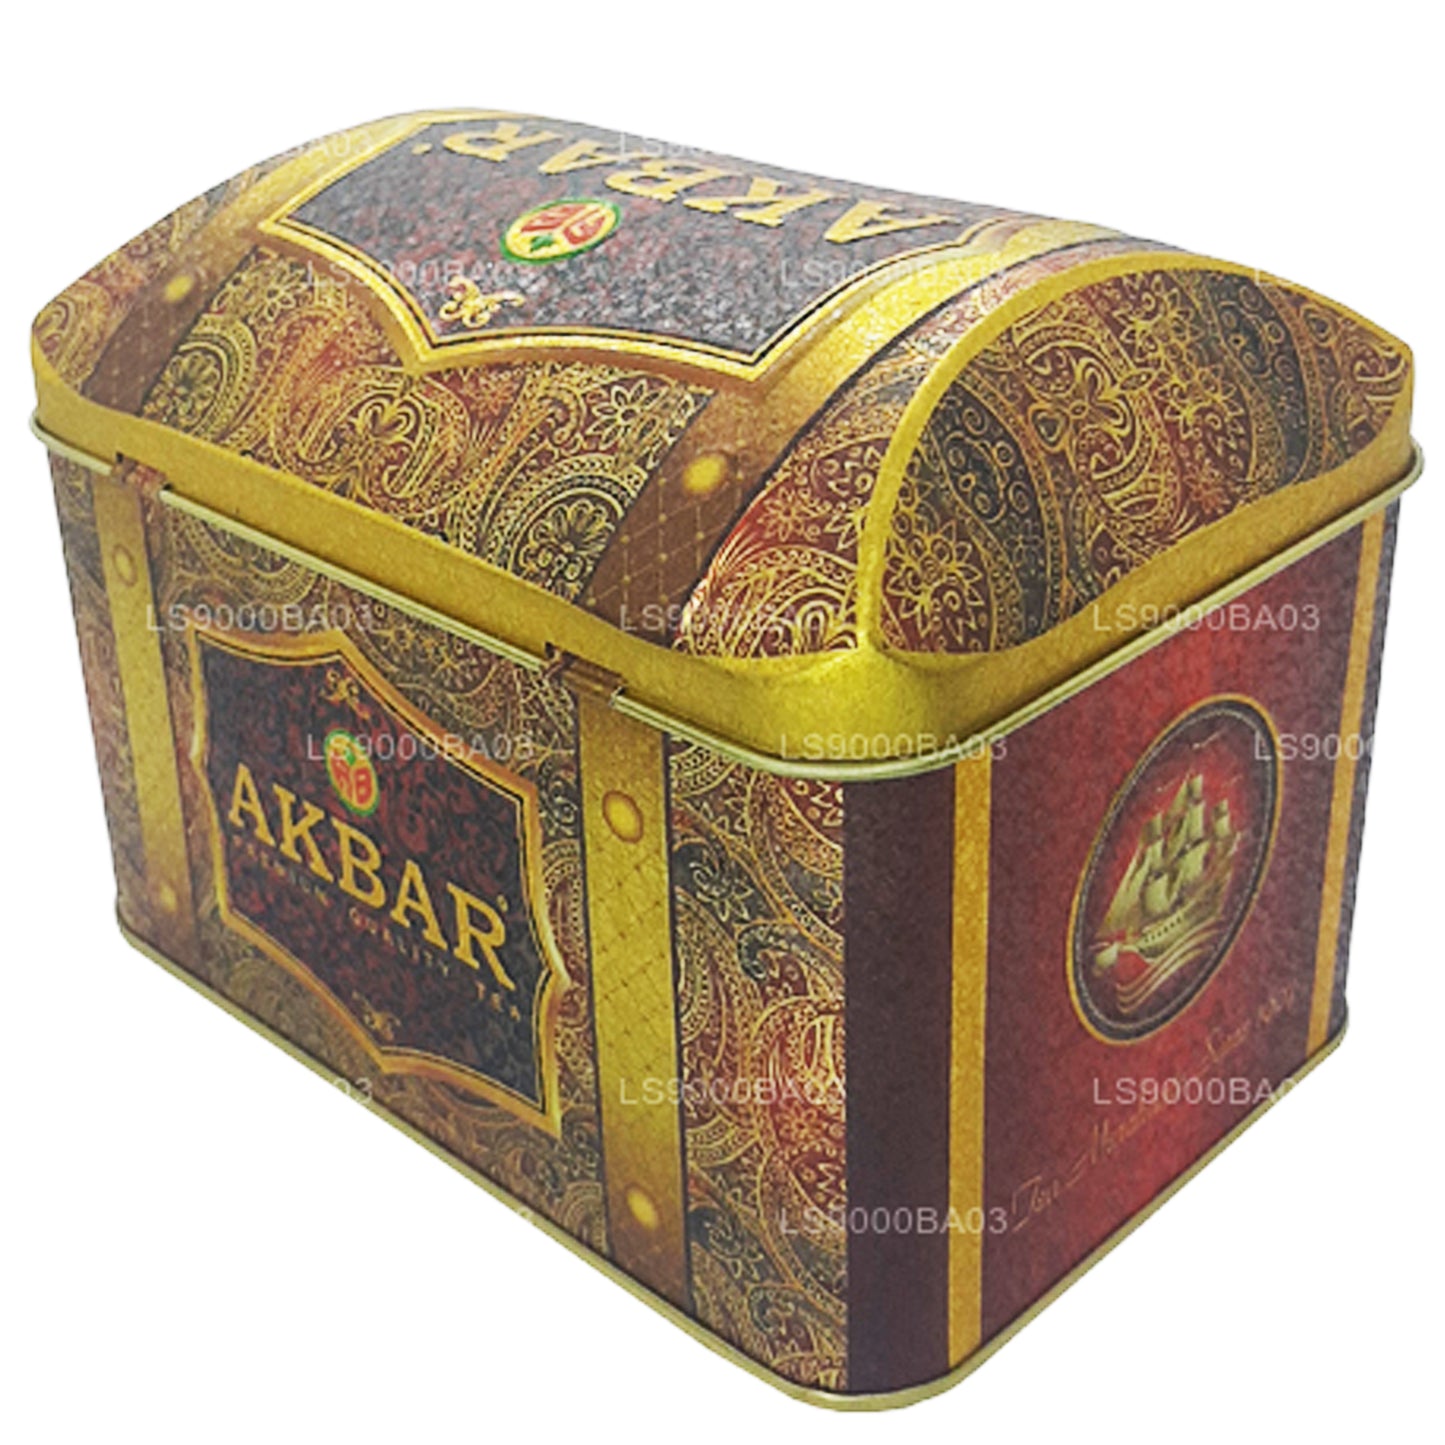 Коробка сокровищ Akbar Эксклюзивная коллекция Клубничный крем (250 г)